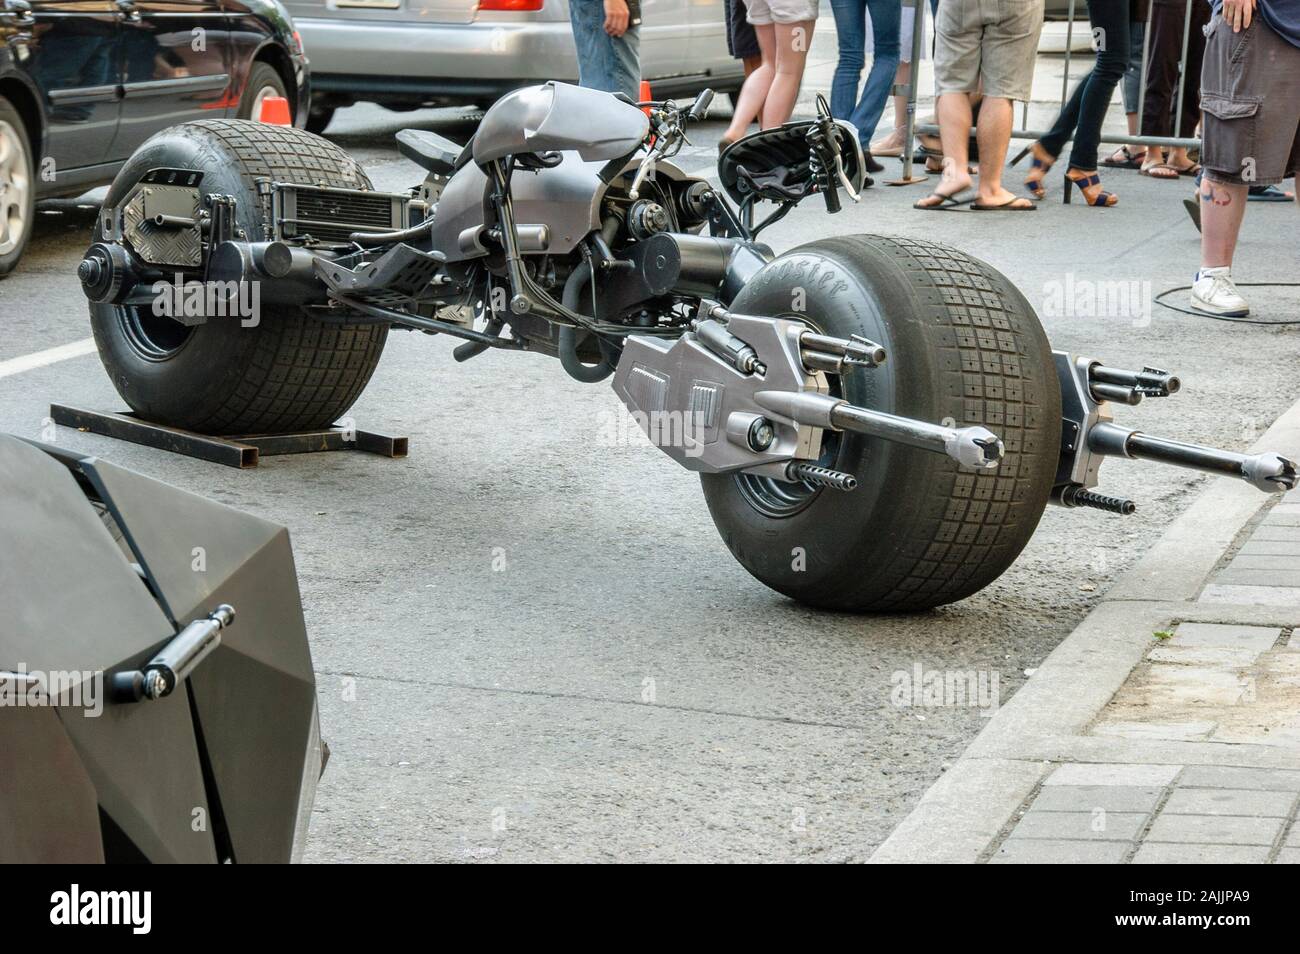 Batpod Motorrad in der Fortsetzung von Batman, der dunkle Ritter Touring der Stadt Toronto für eine Werbekampagne genutzt. Stockfoto